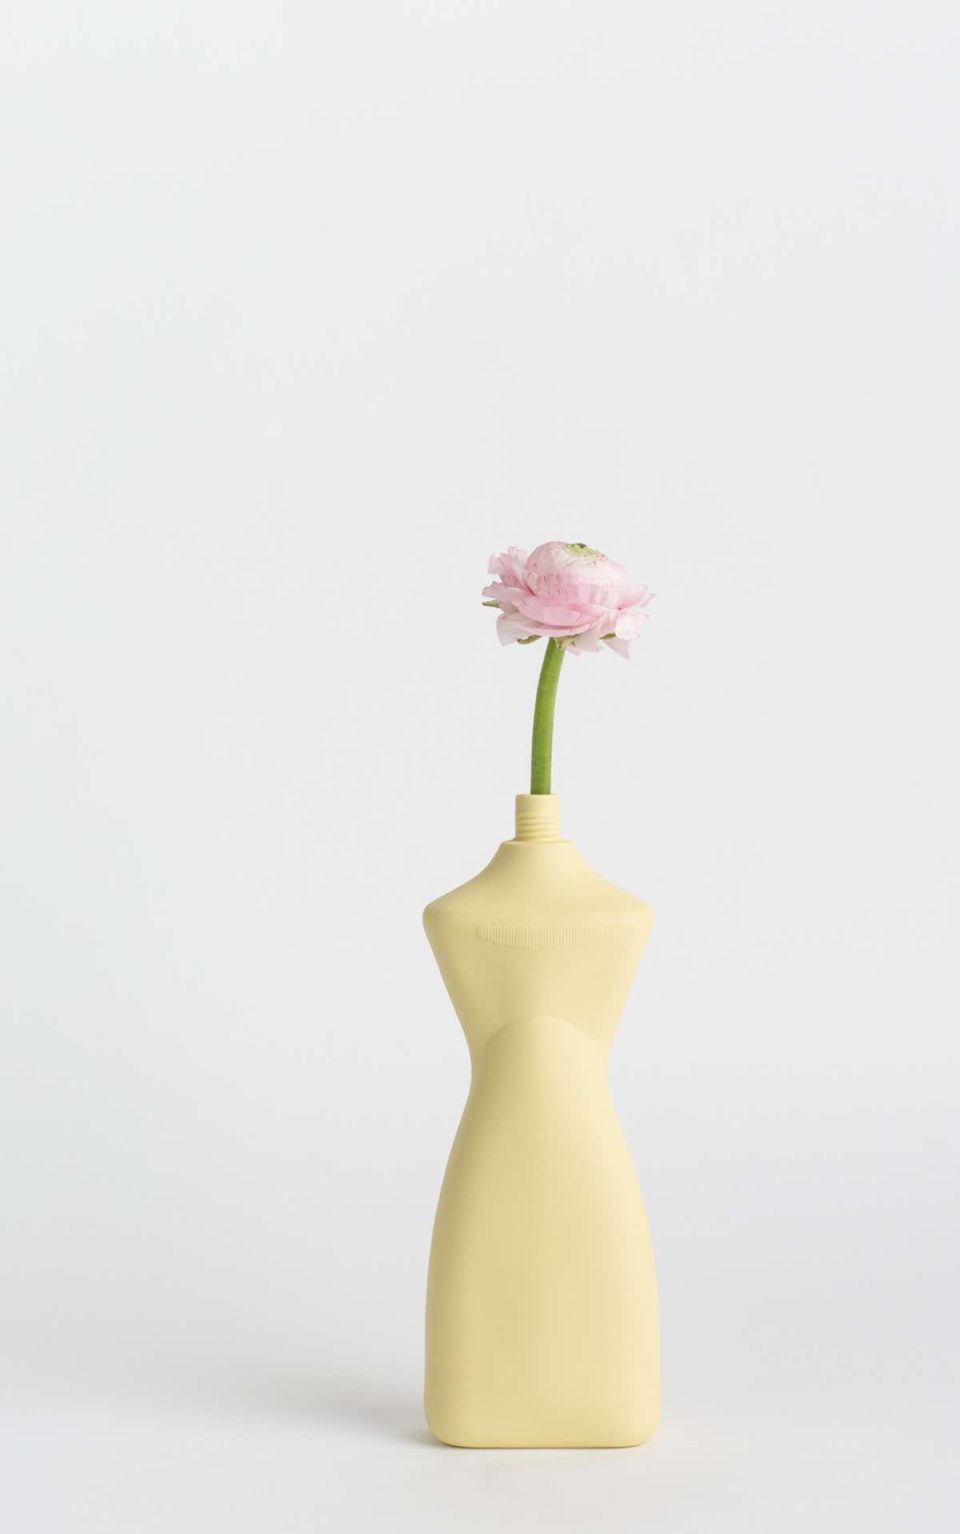 Prikazana je vaza brenda foekje fleur u svijetlo žutoj boji ispred sive pozadine. Vaza ima oblik kontejnera za sredstvo za pranje suđa. U vazu je utaknut ružićasti cvjet.